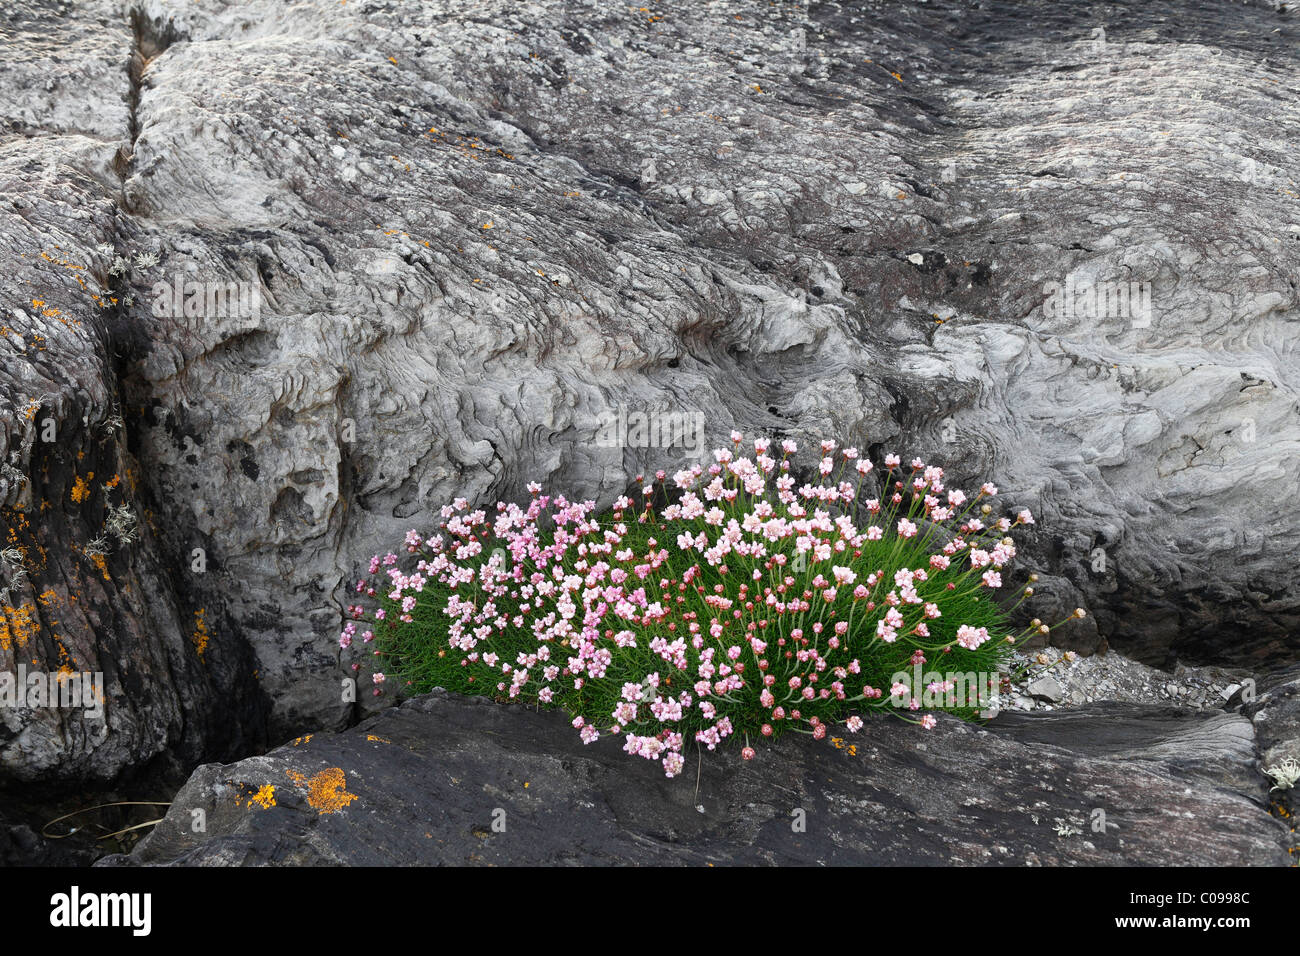 L'épargne, le sea-rose (Armeria maritima) sur rock, Péninsule de Beara, Cork, République d'Irlande, British Isles, Europe Banque D'Images